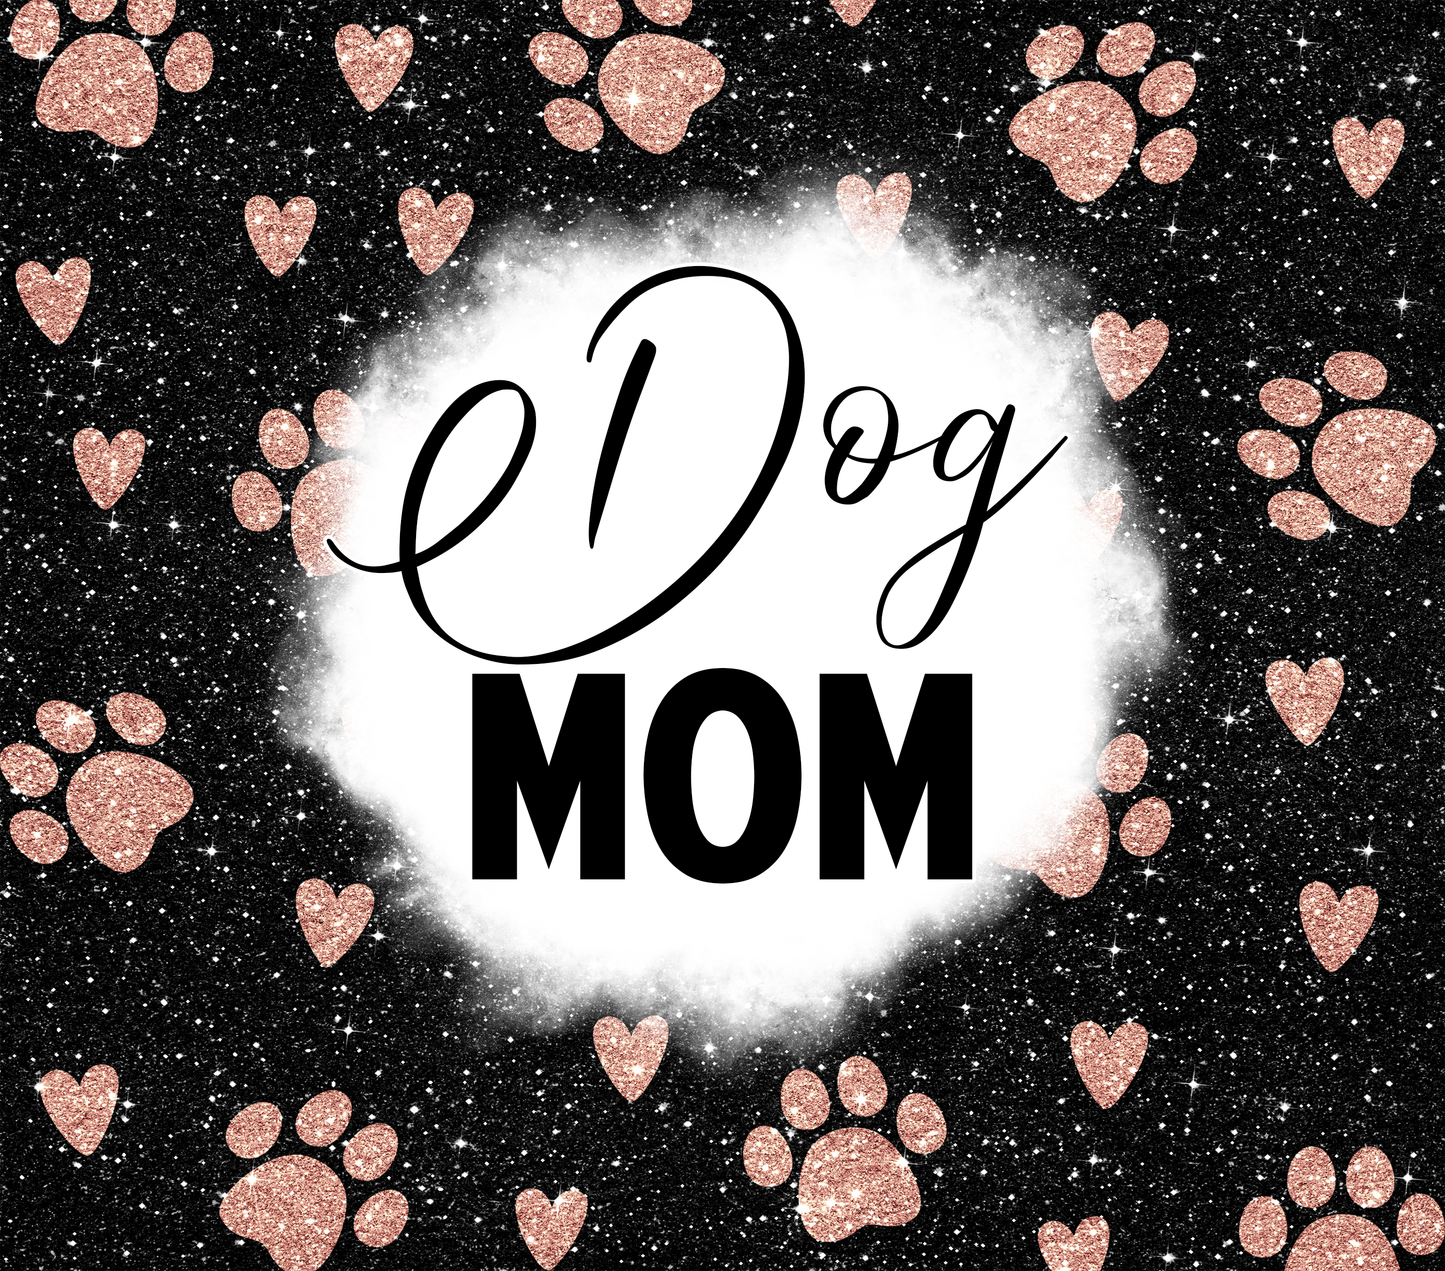 Dog Mom Life